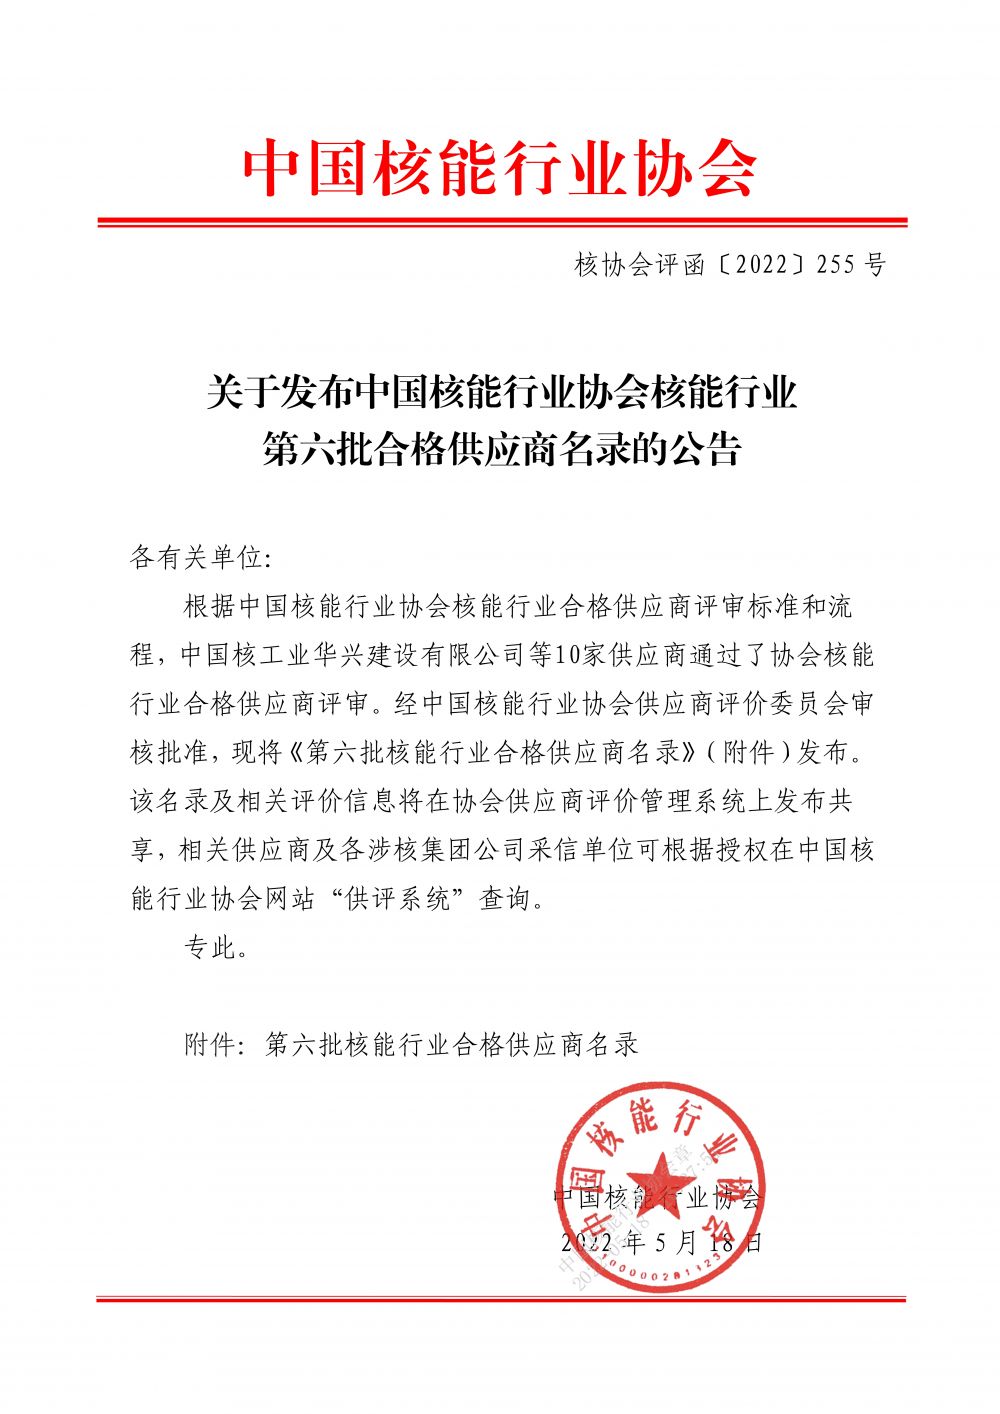 关于发布中国核能行业协会核能行业第六批合格供应商名录的公告_1.jpg